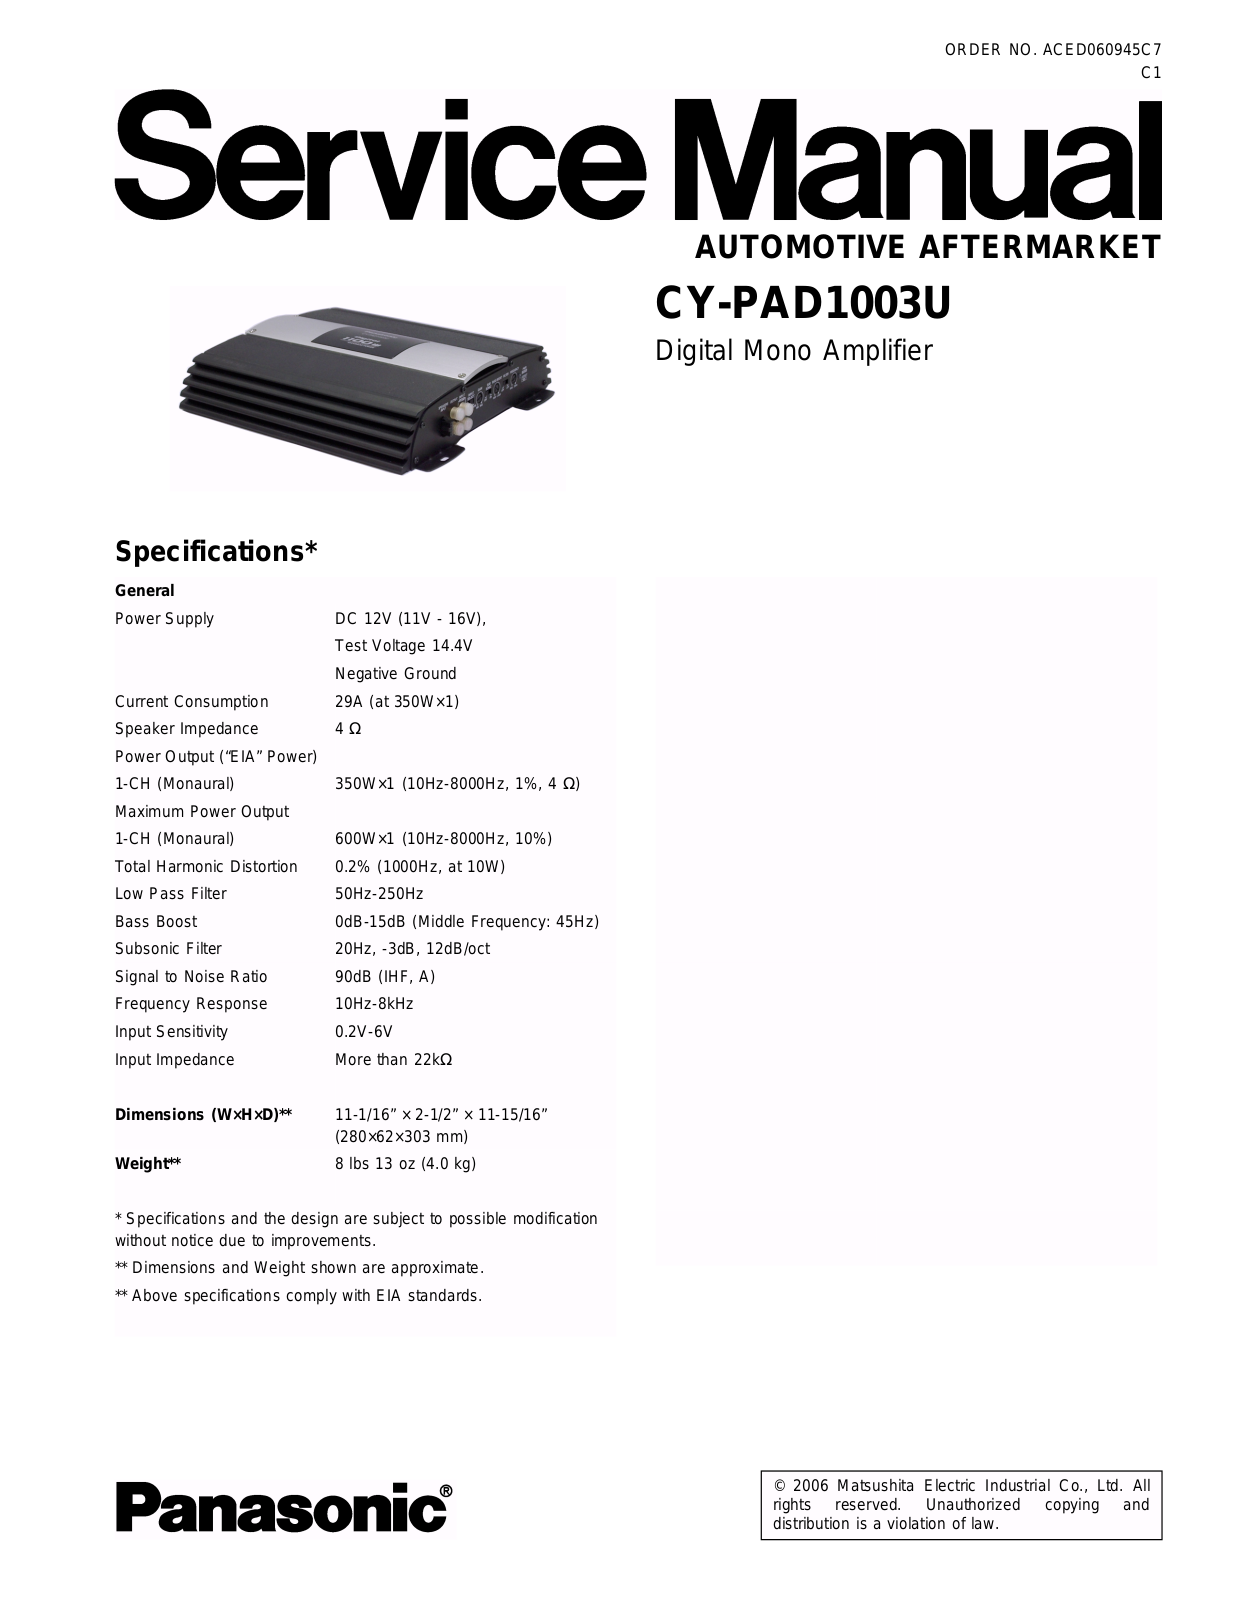 Panasonic CYPAD-1003-U Service manual